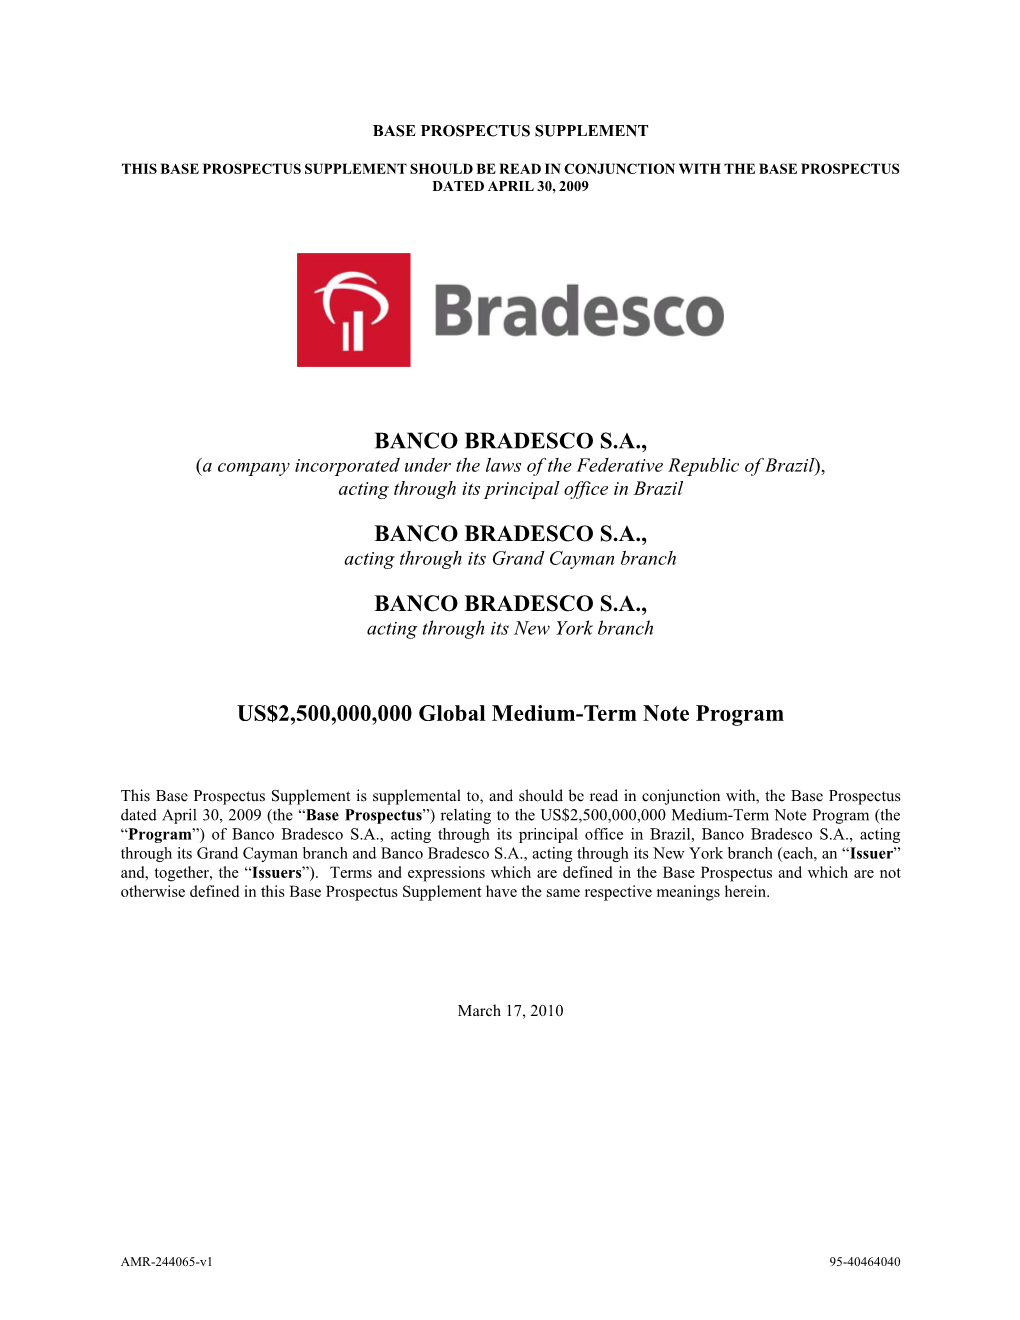 Banco Bradesco S.A., Banco Bradesco S.A., Banco